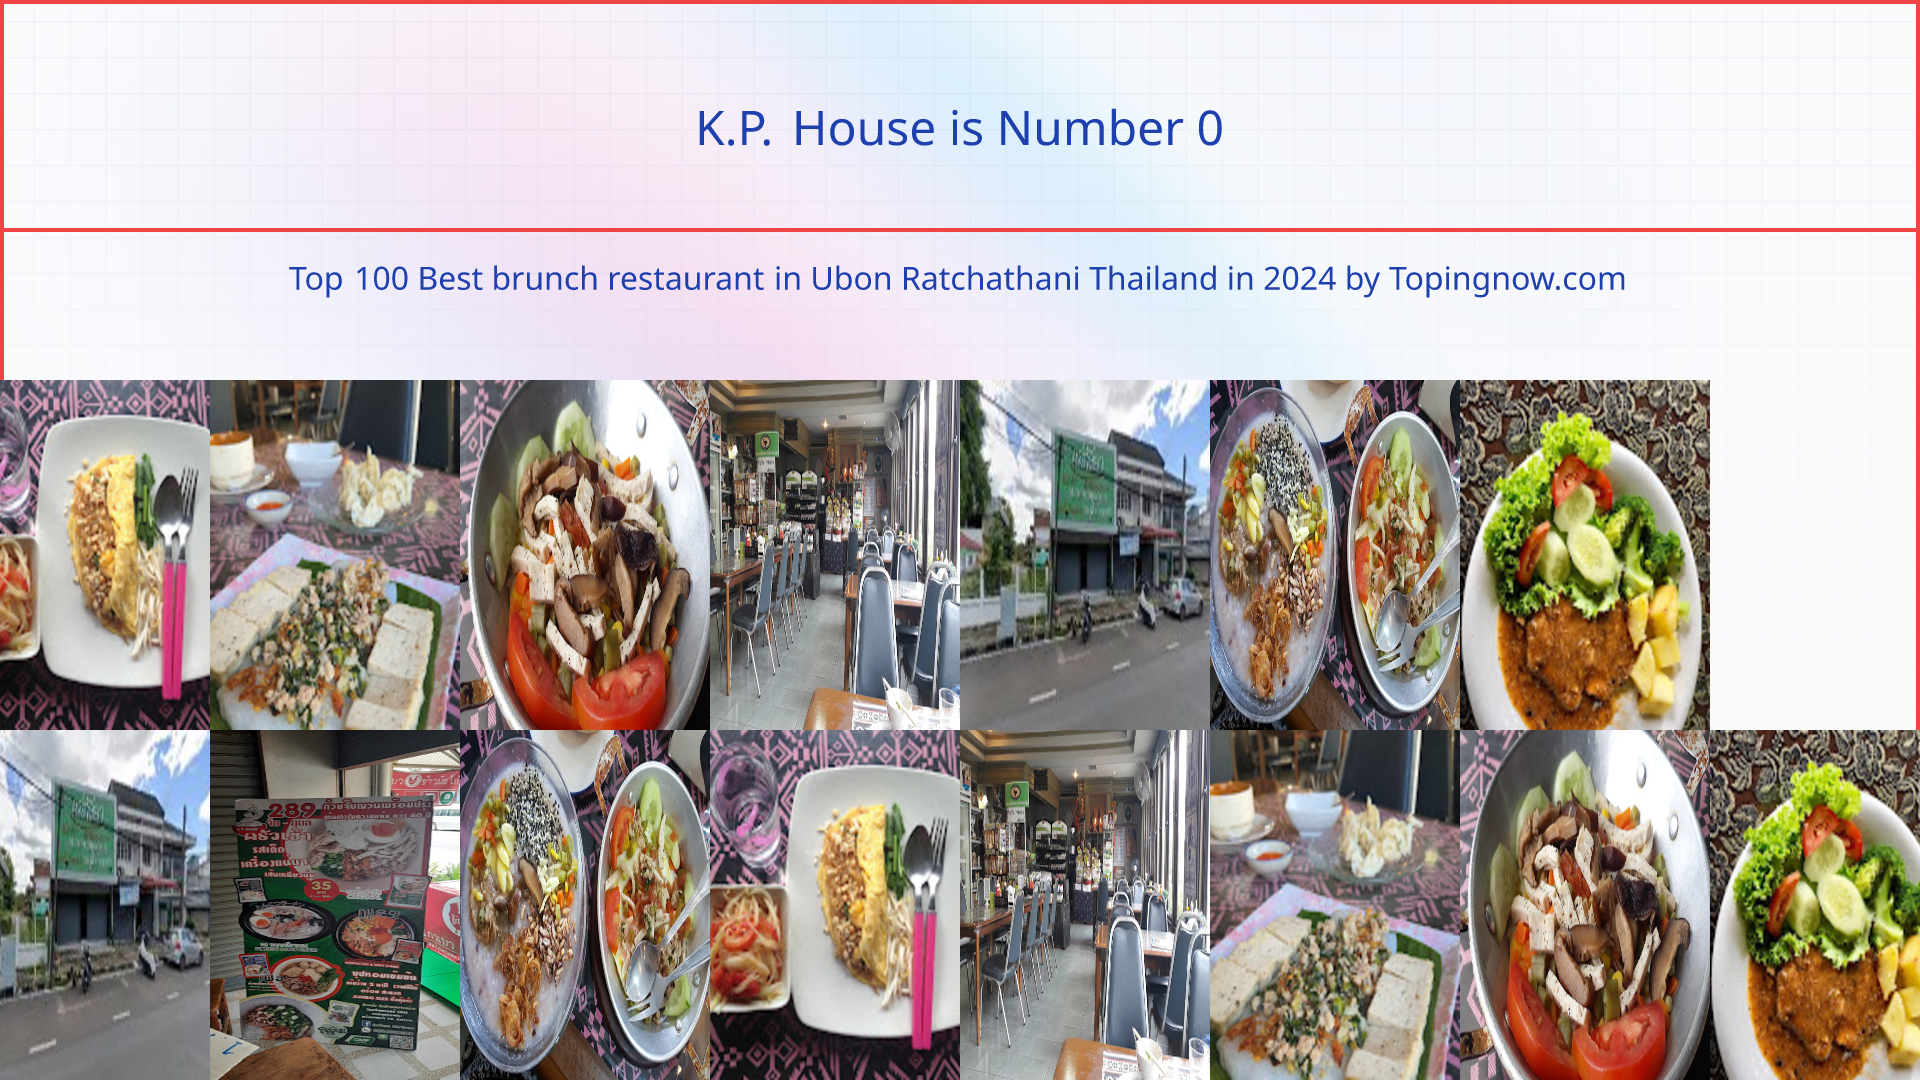 K.P. House: Top 100 Best brunch restaurant in Ubon Ratchathani Thailand in 2024